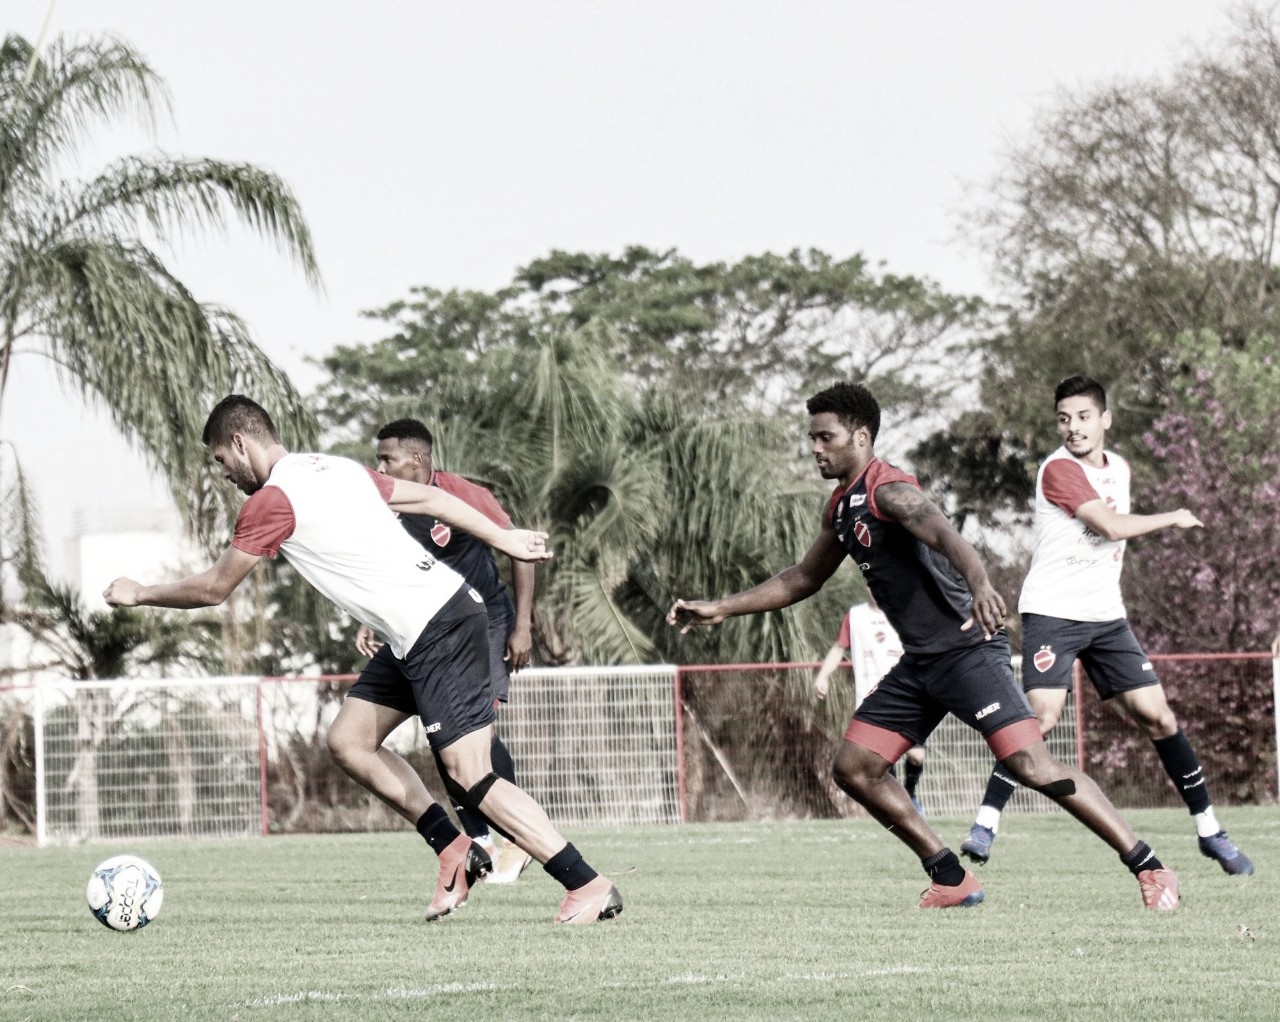 Em novo mando de campo, Vila Nova recebe Sport em
Goiânia